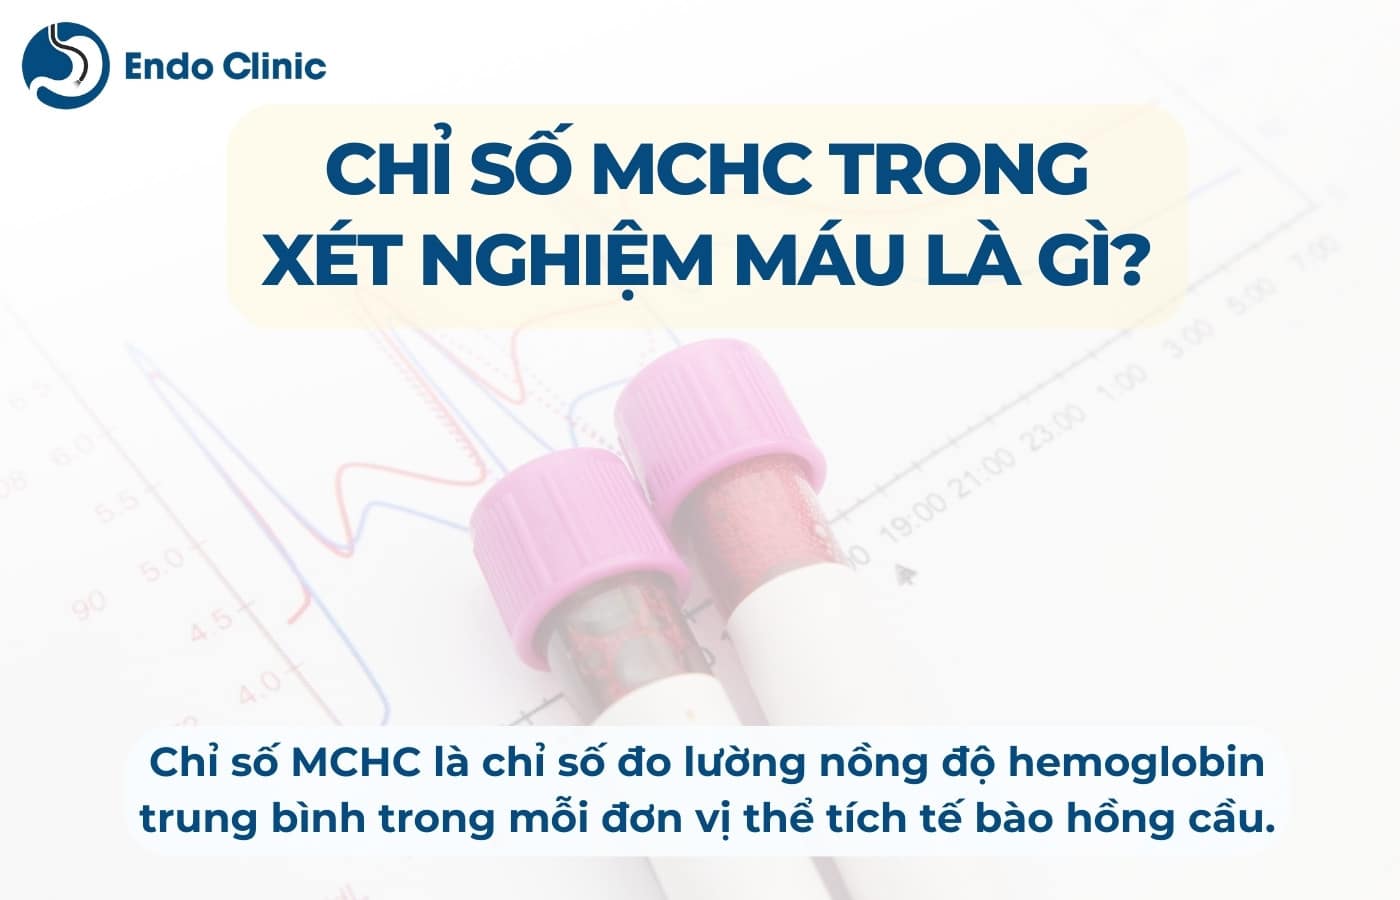 Chỉ số MCHC trong xét nghiệm công thức máu là gì